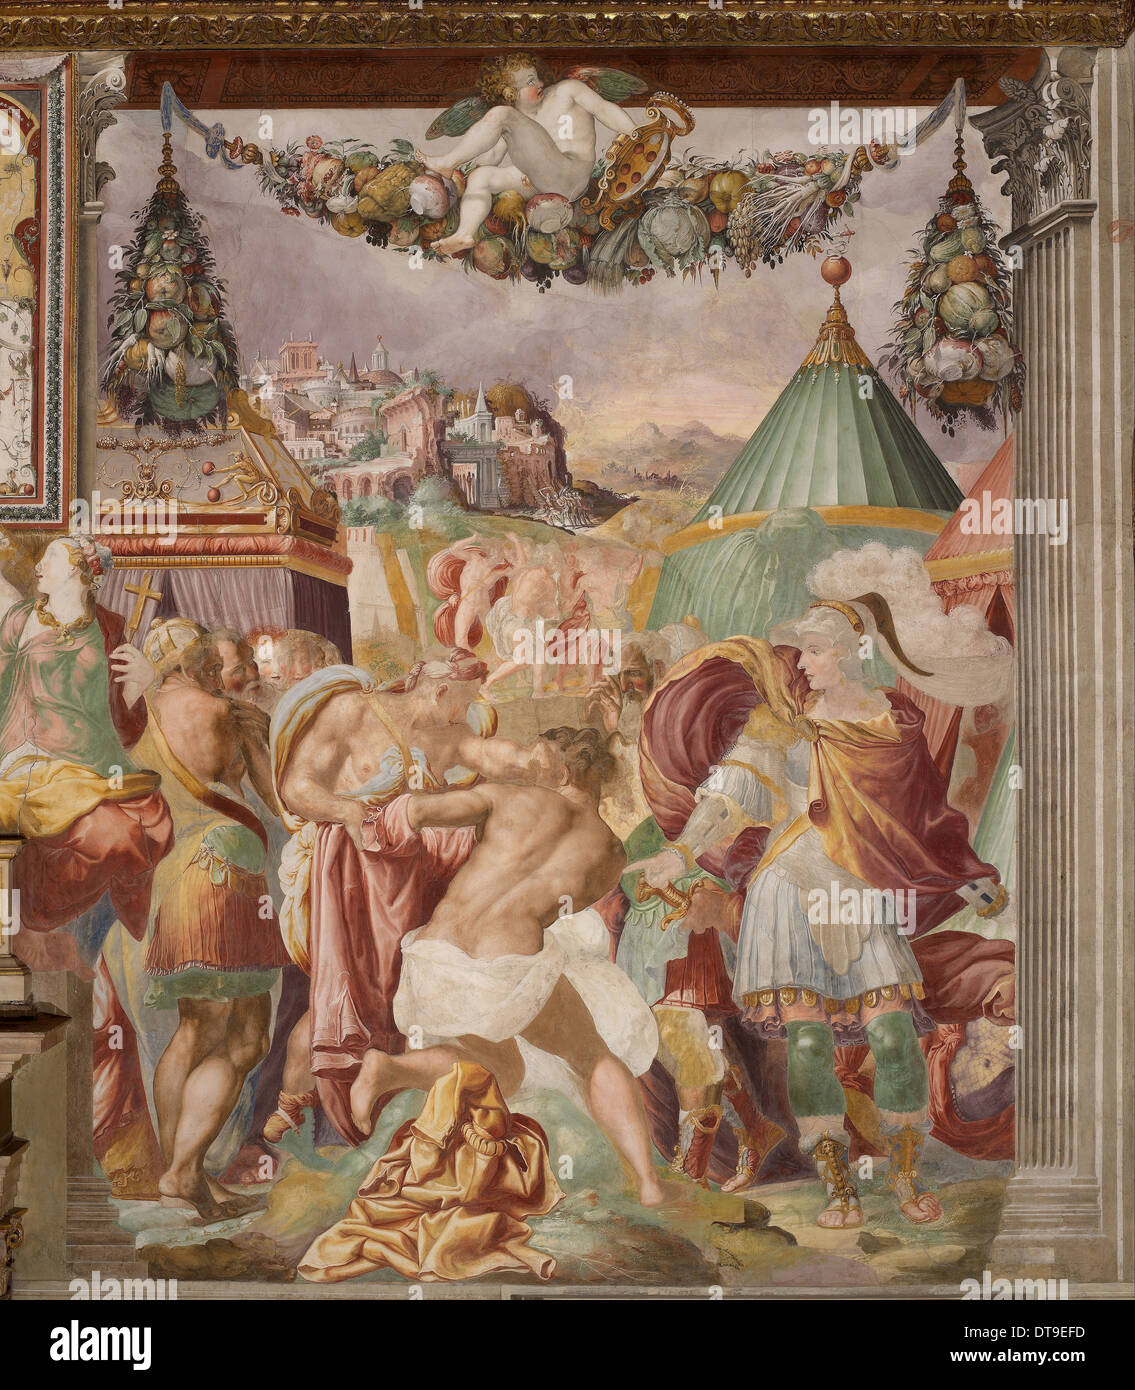 La punition du Maître perfide de Falerii, ch. 1544. Artiste : Rossi, Francesco, de (1510-1563) Banque D'Images